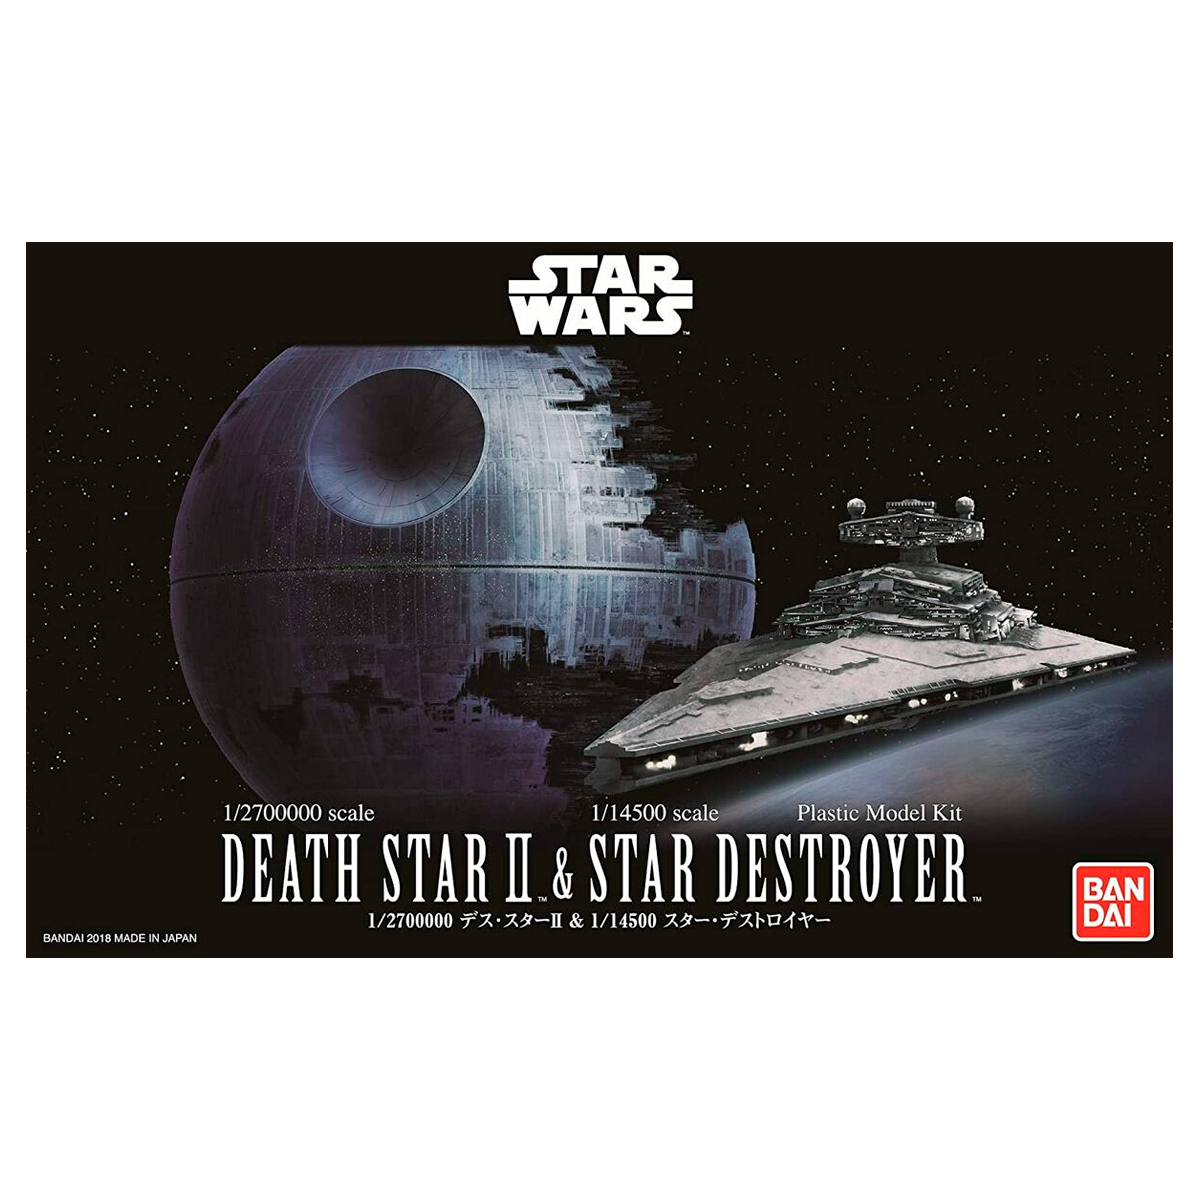 Death Star II & Imperial Star Destroyer (Bandai) 1/2700k